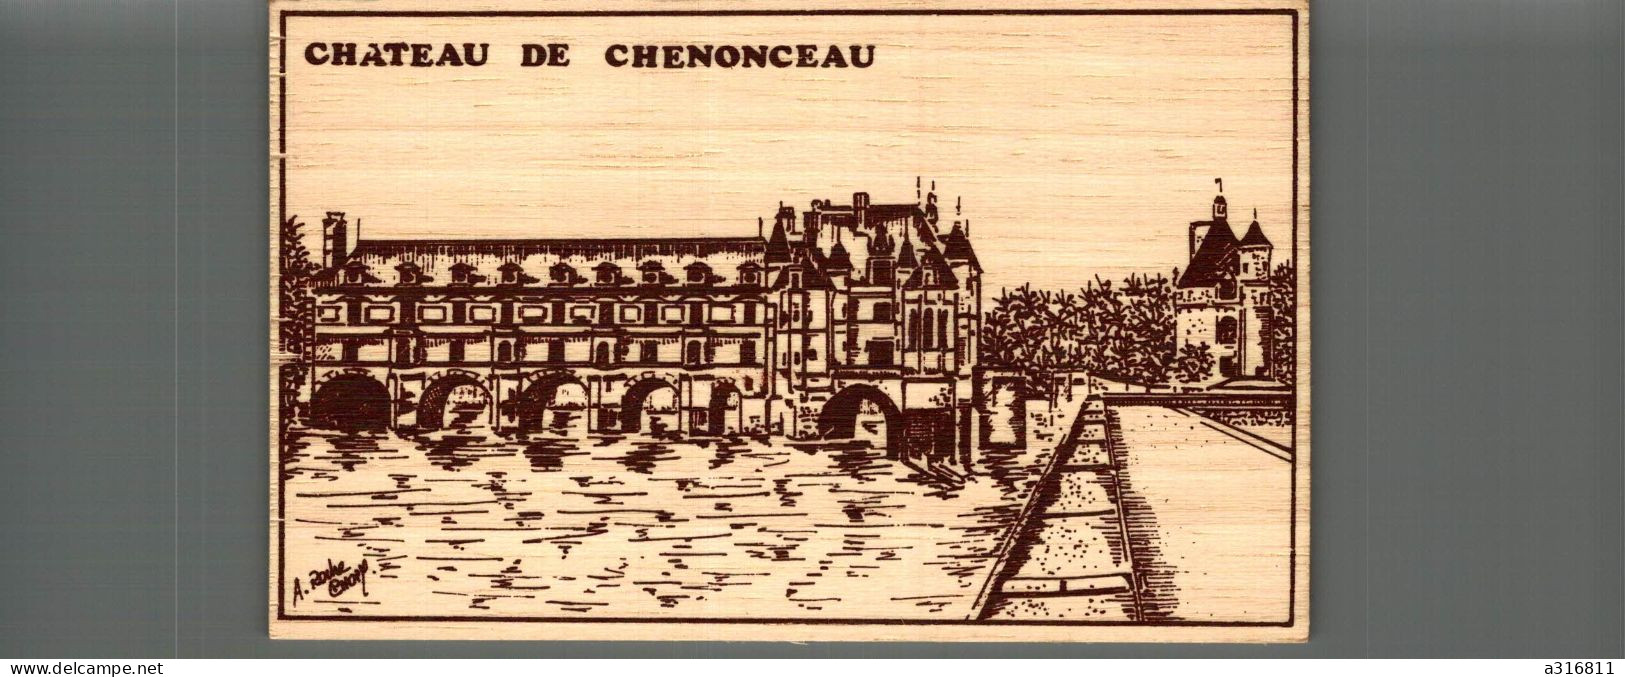 Carte Bois Chateau De Chenonceau - Chenonceaux